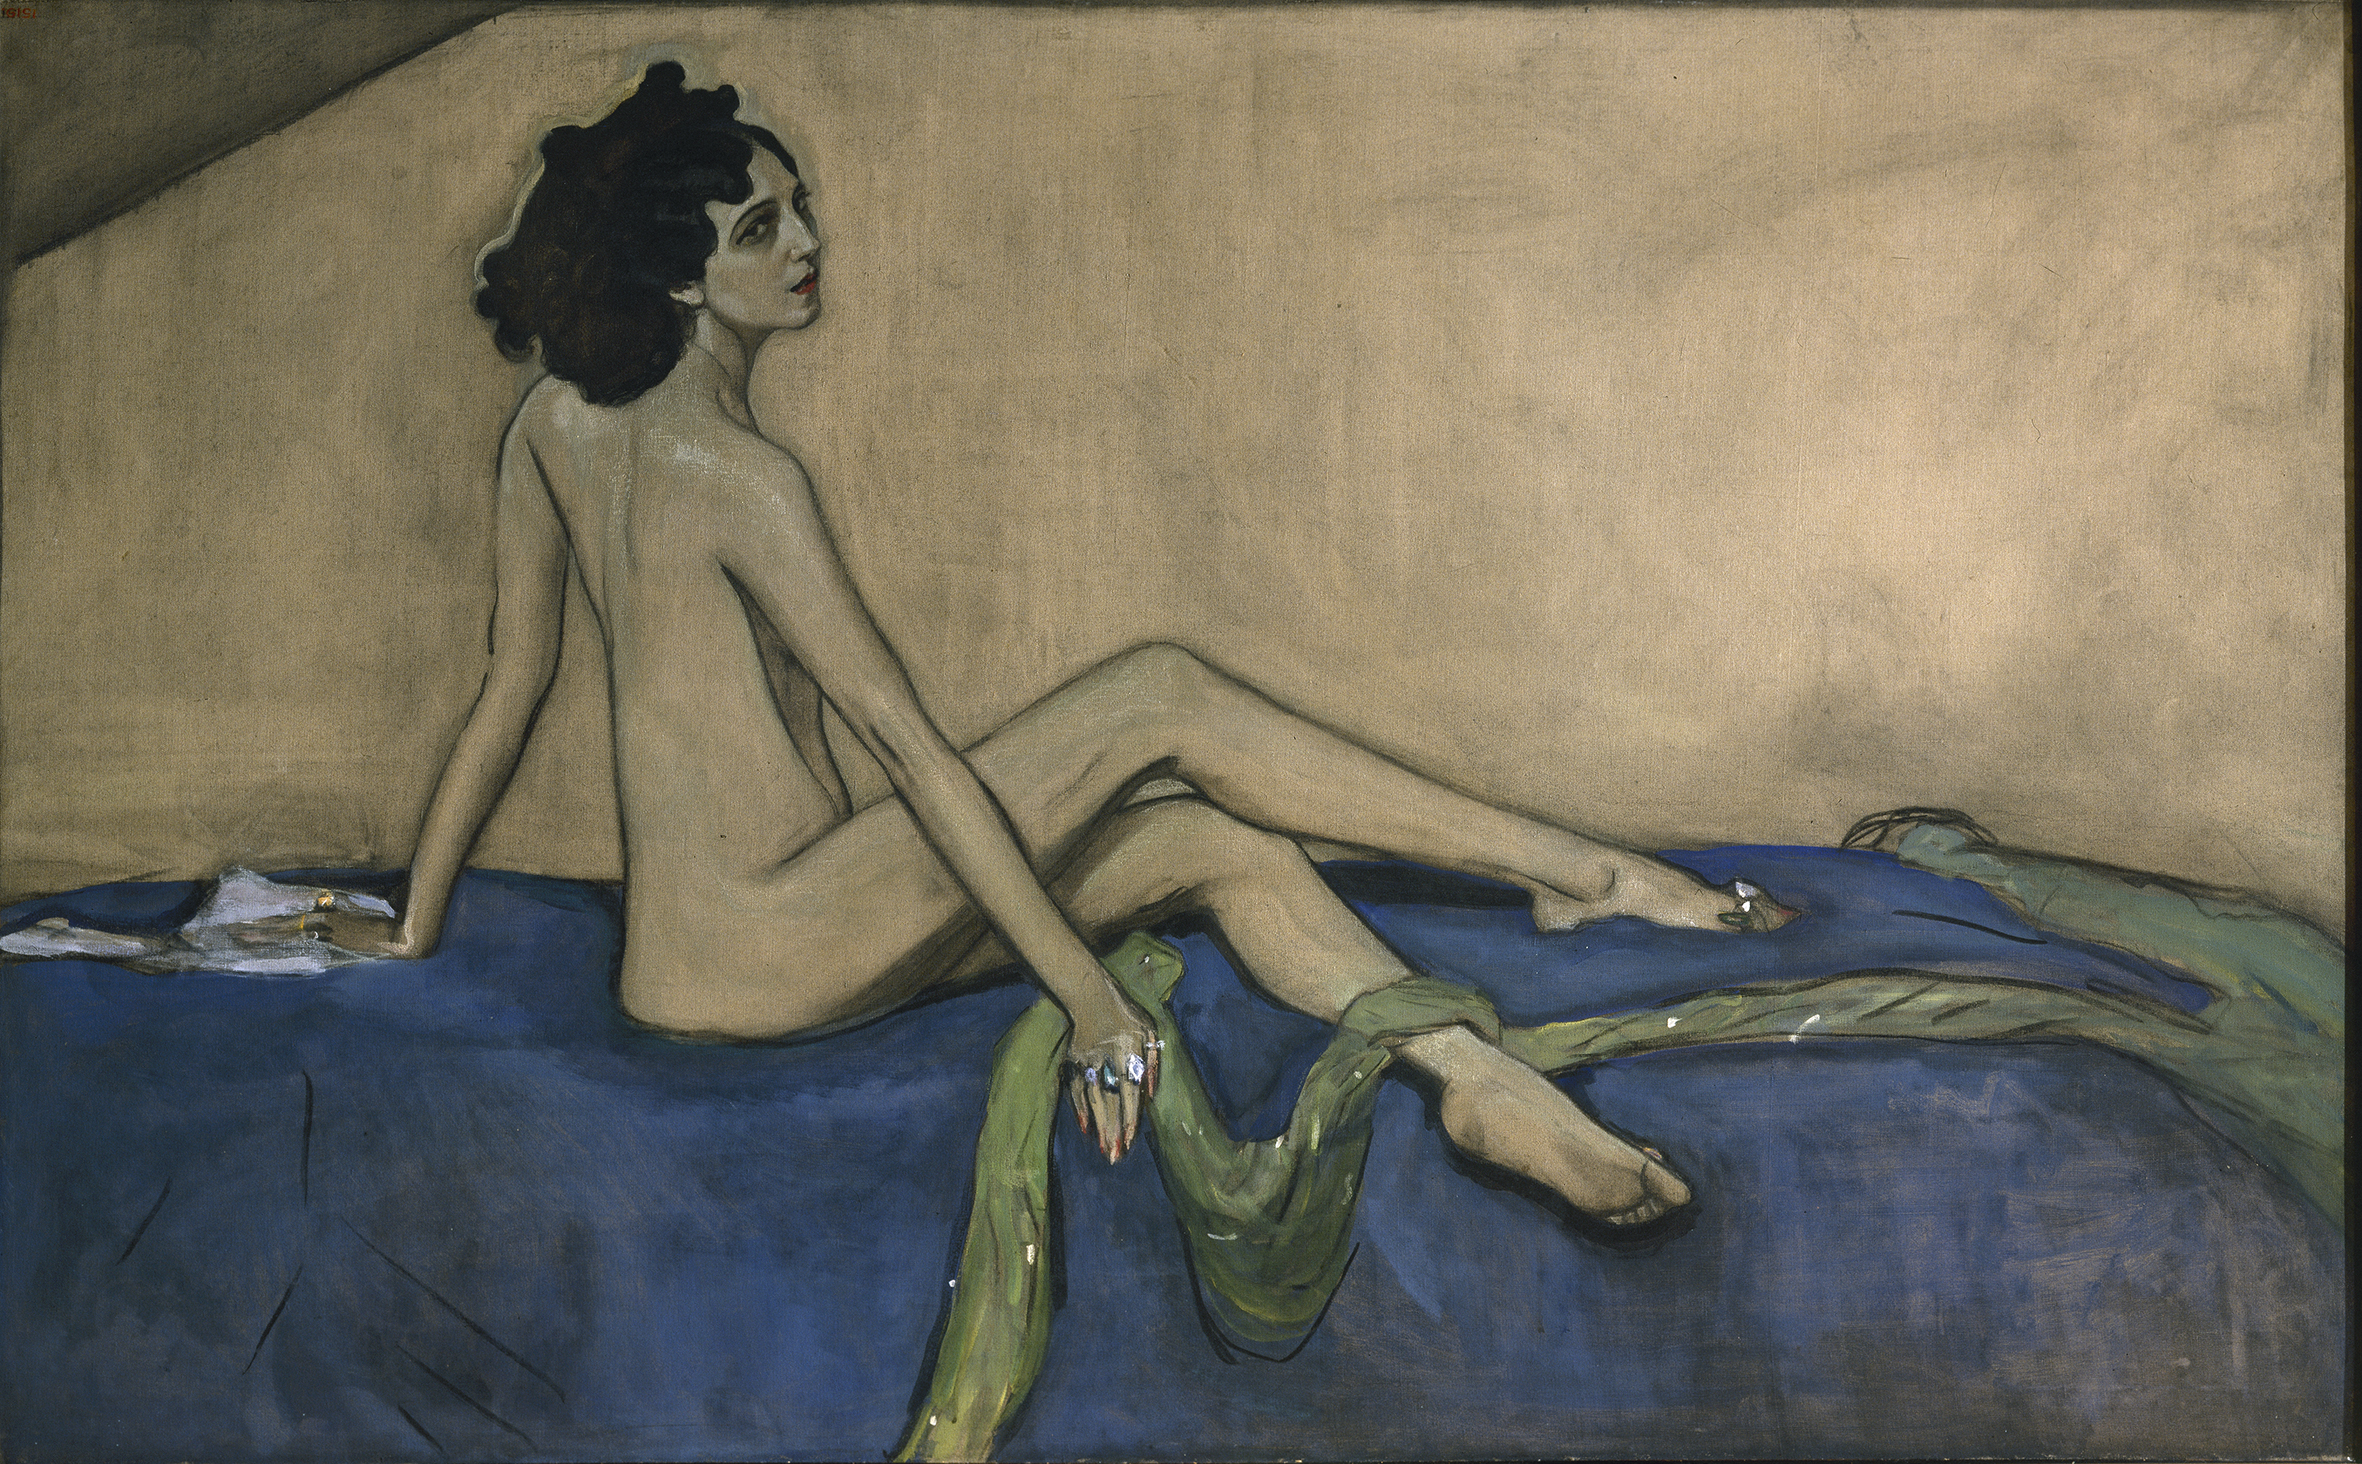 Іда Рубінштейн by Valentin Serov - 1910 - 147 x 233 см 